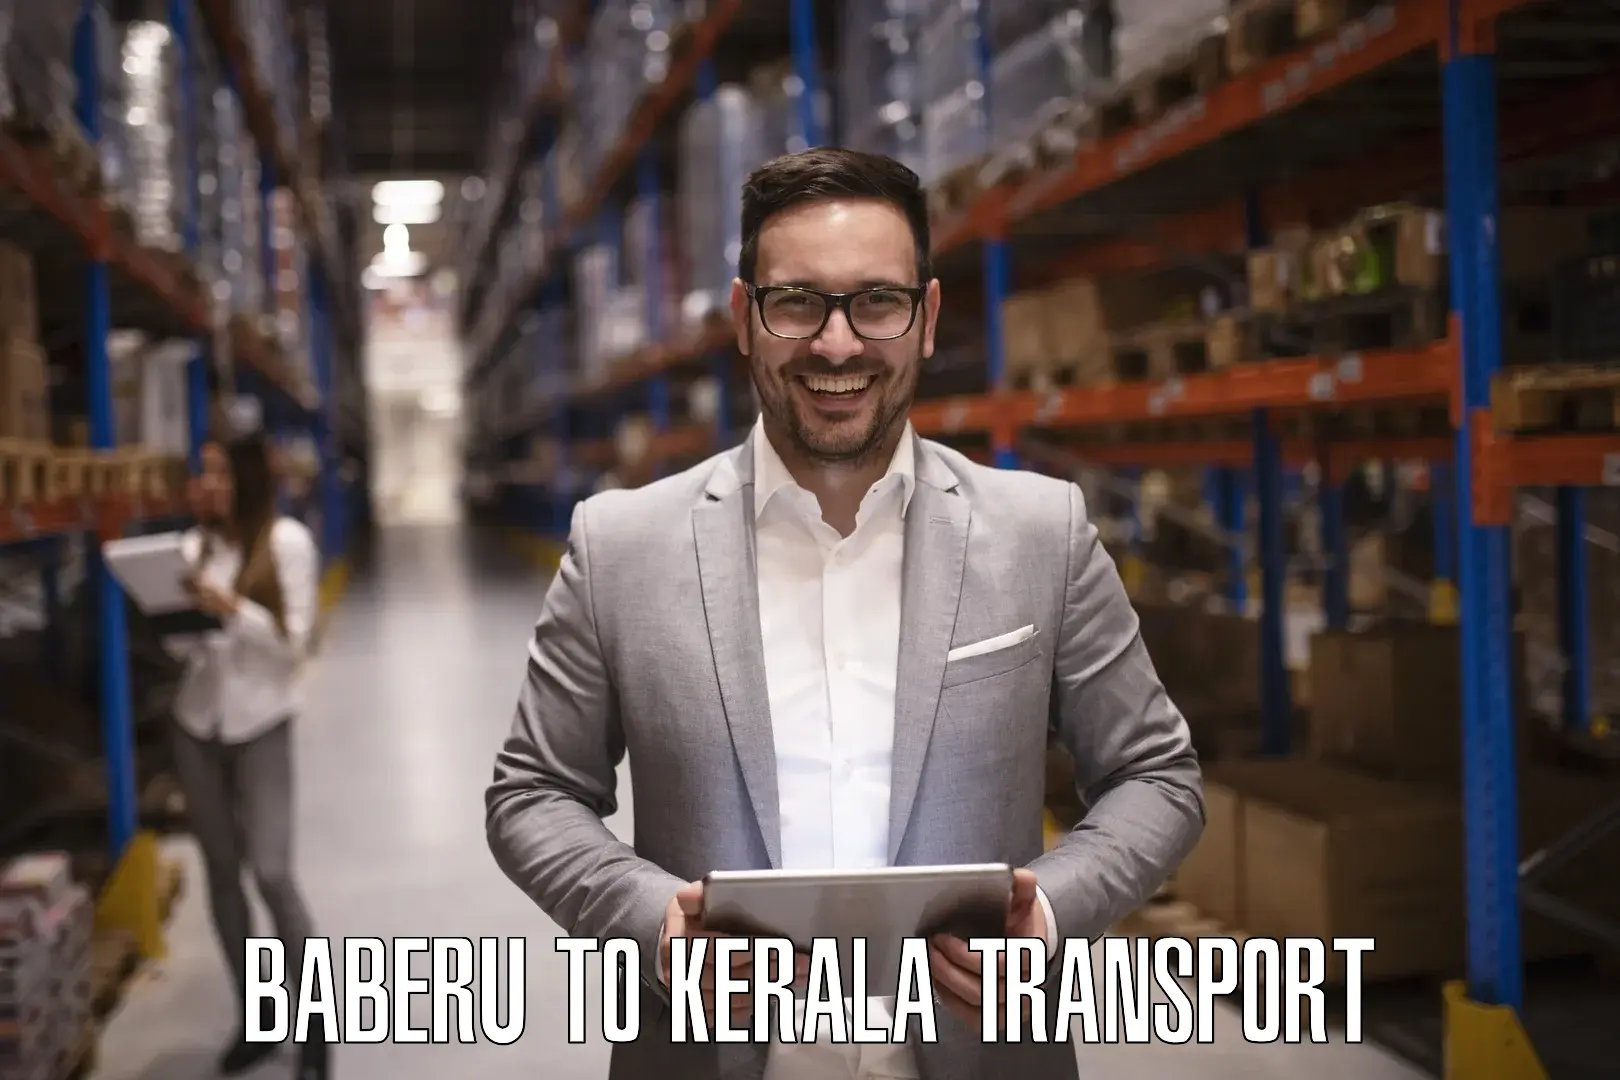 Road transport online services Baberu to Guruvayur